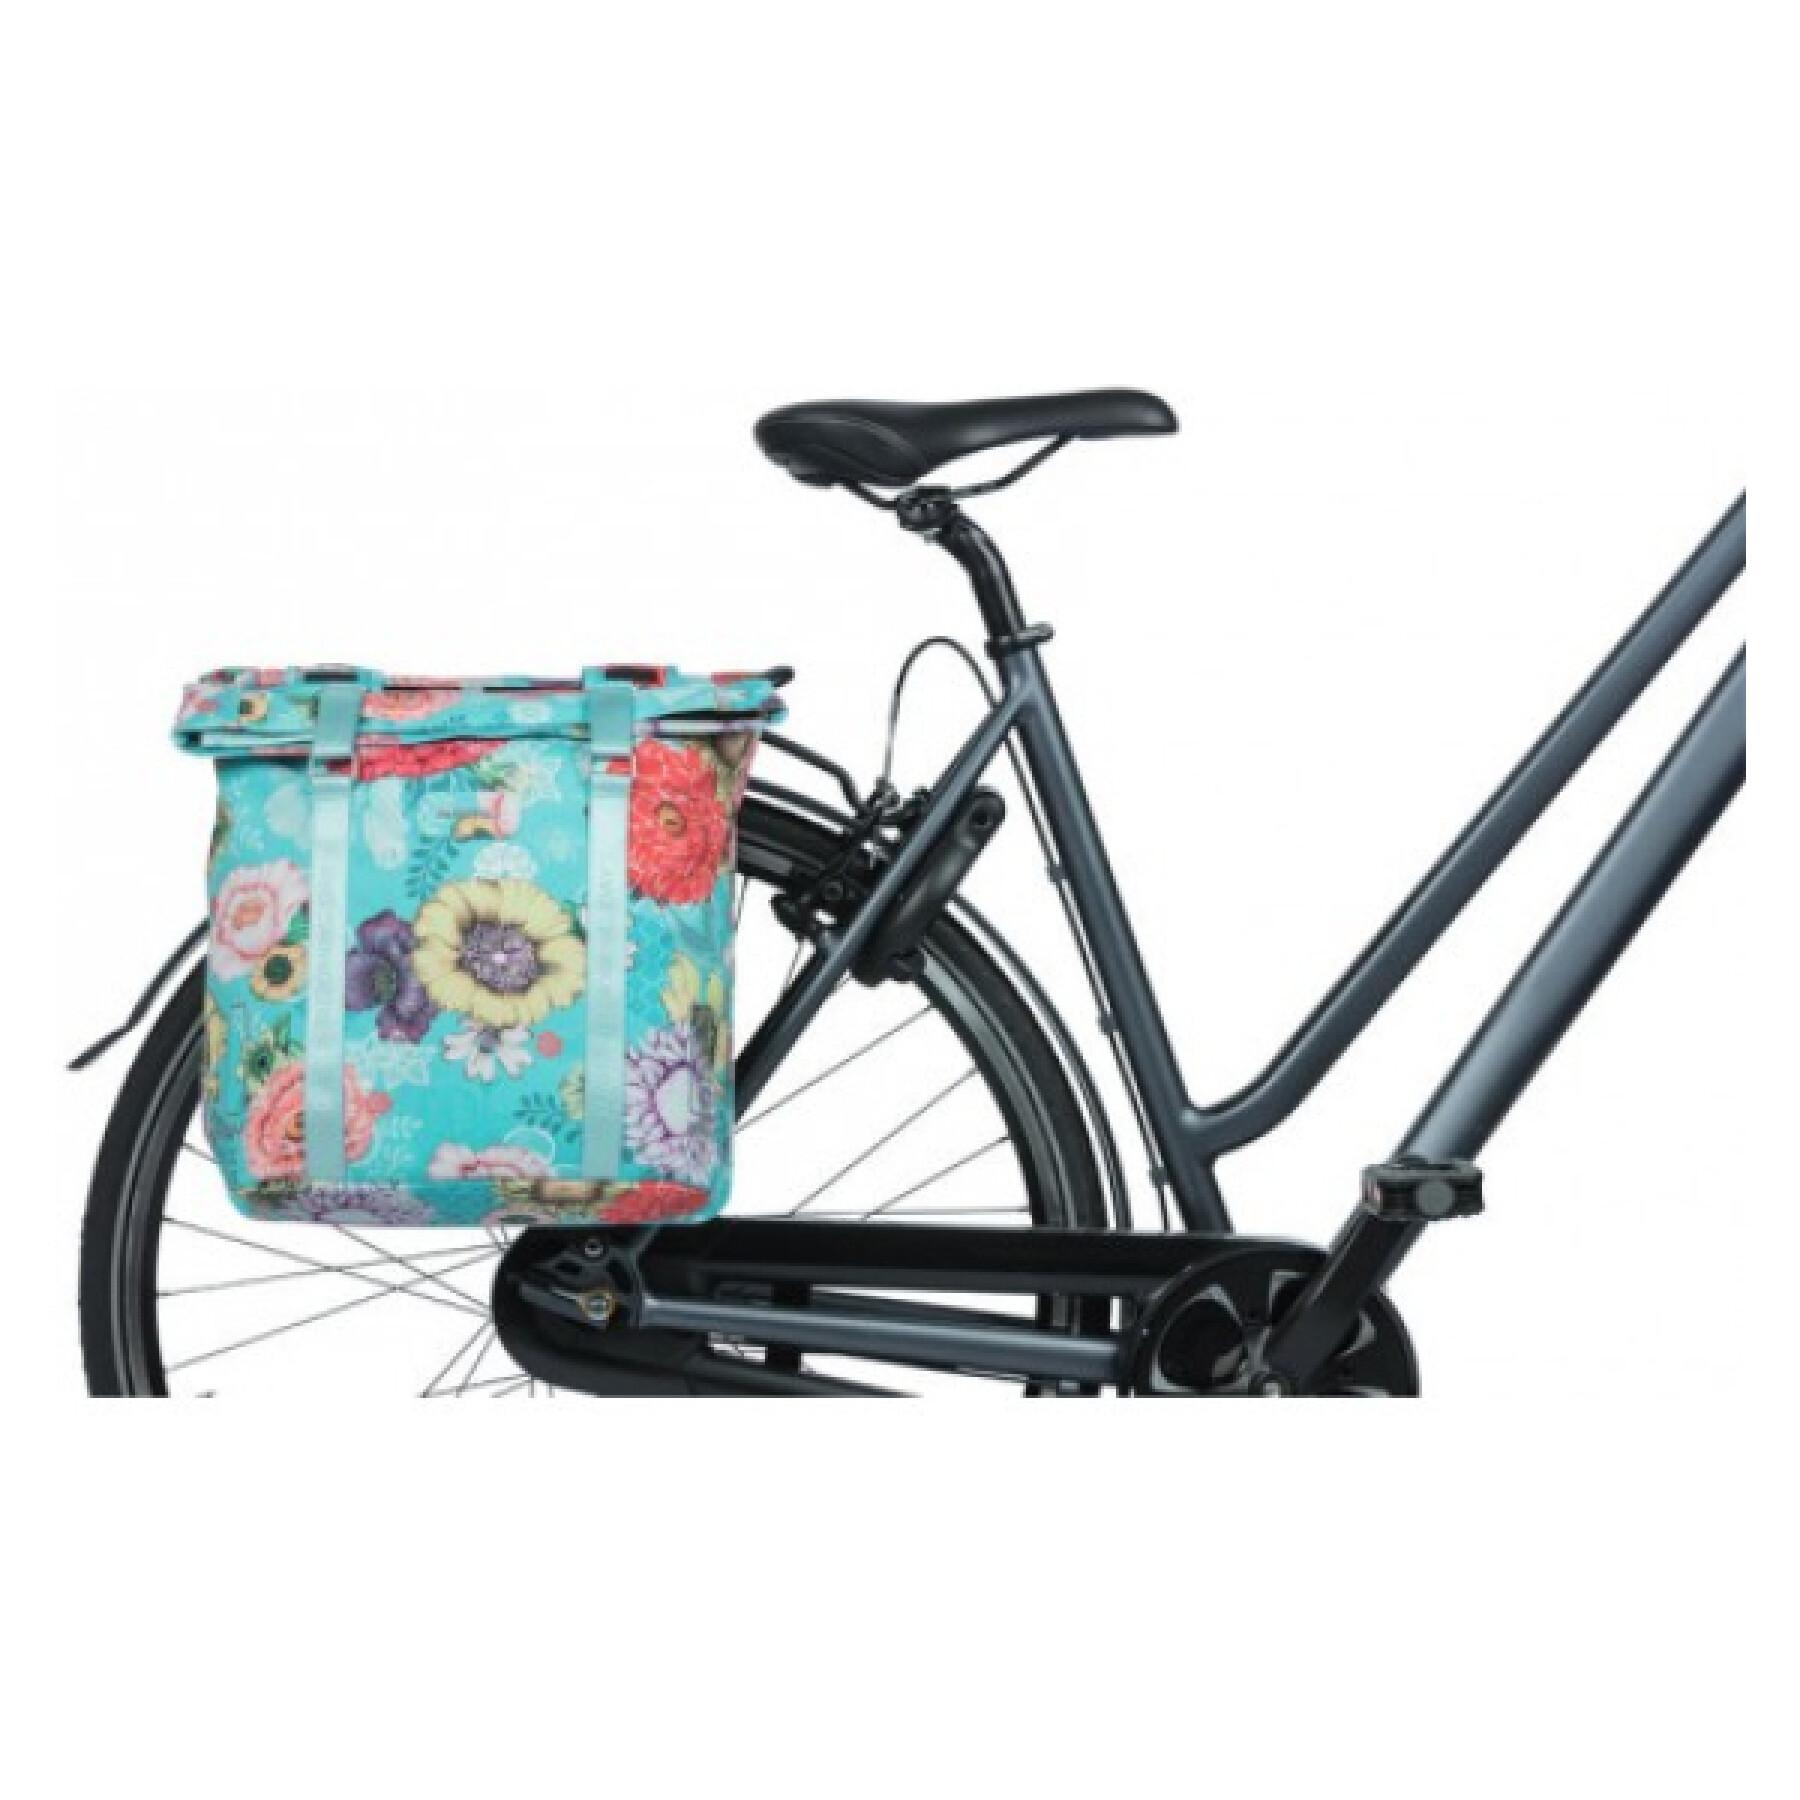 Saco de poliéster impermeável para bicicletas com material reflector Basil bloom field